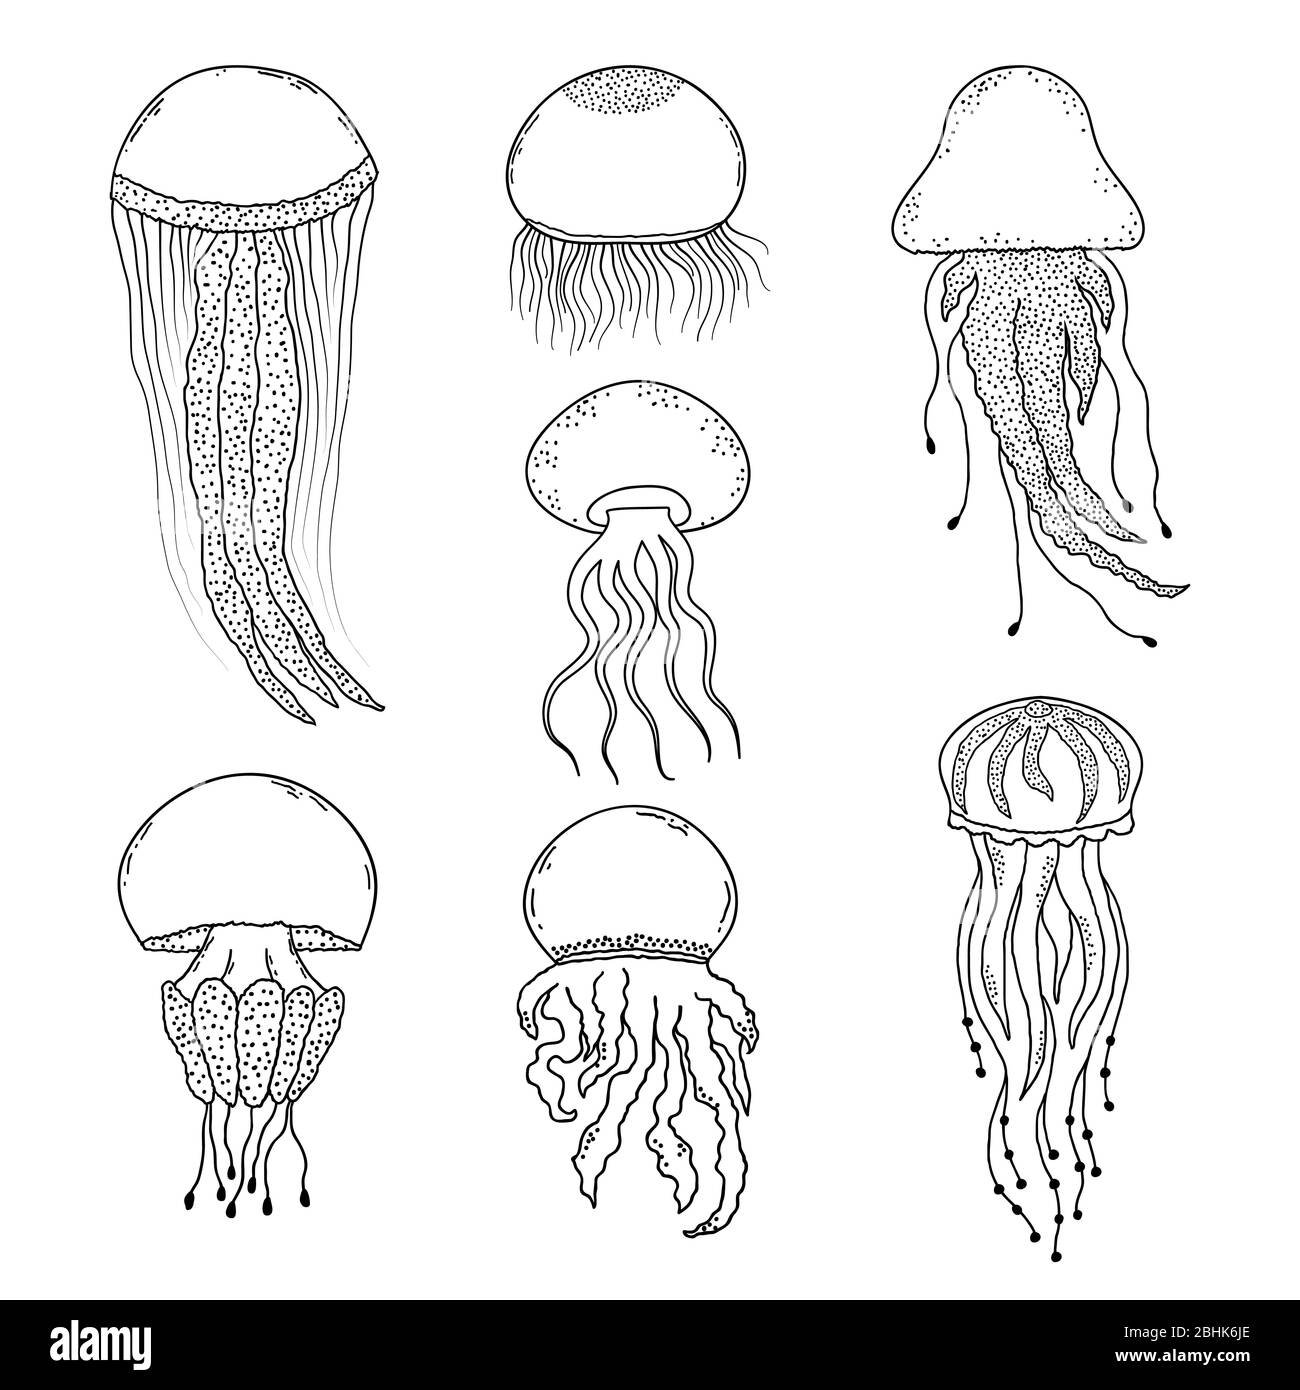 Схема рисования медузы для детей